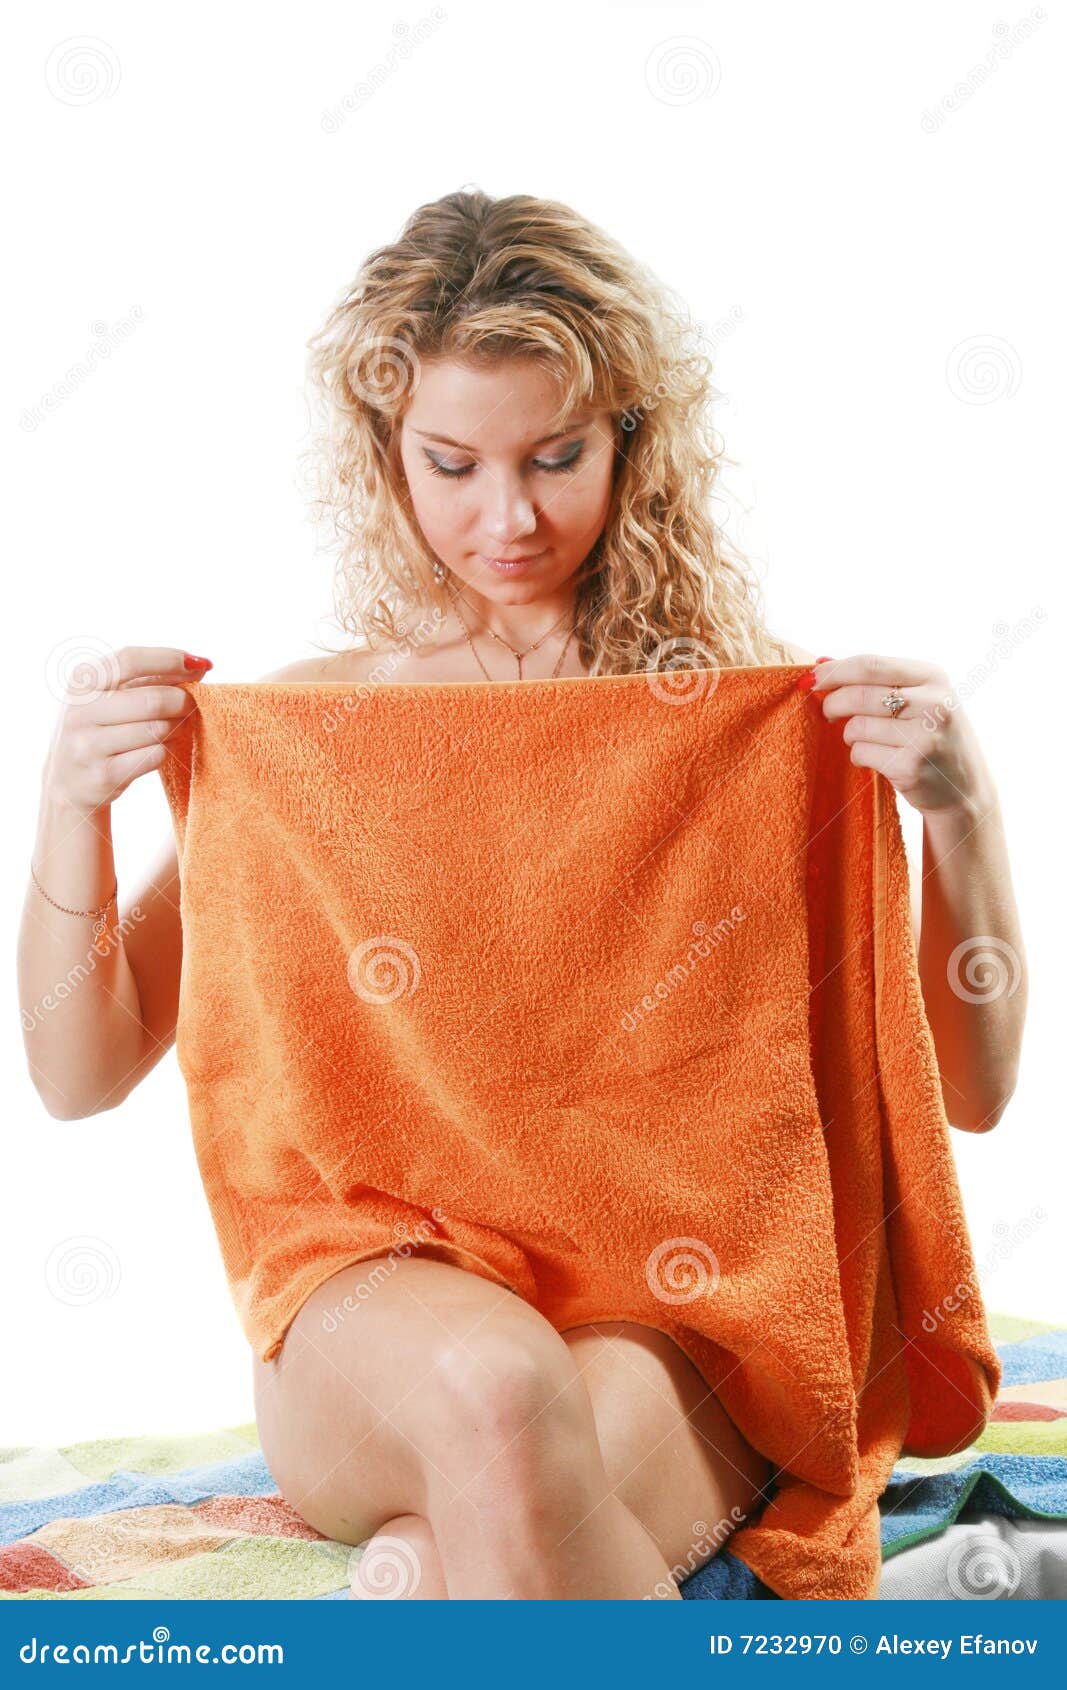 Ходит в полотенце. Девушка в полотенце. Юная девушка в полотенце. Женщина в одном полотенце. Молодые девушки в полотенце.